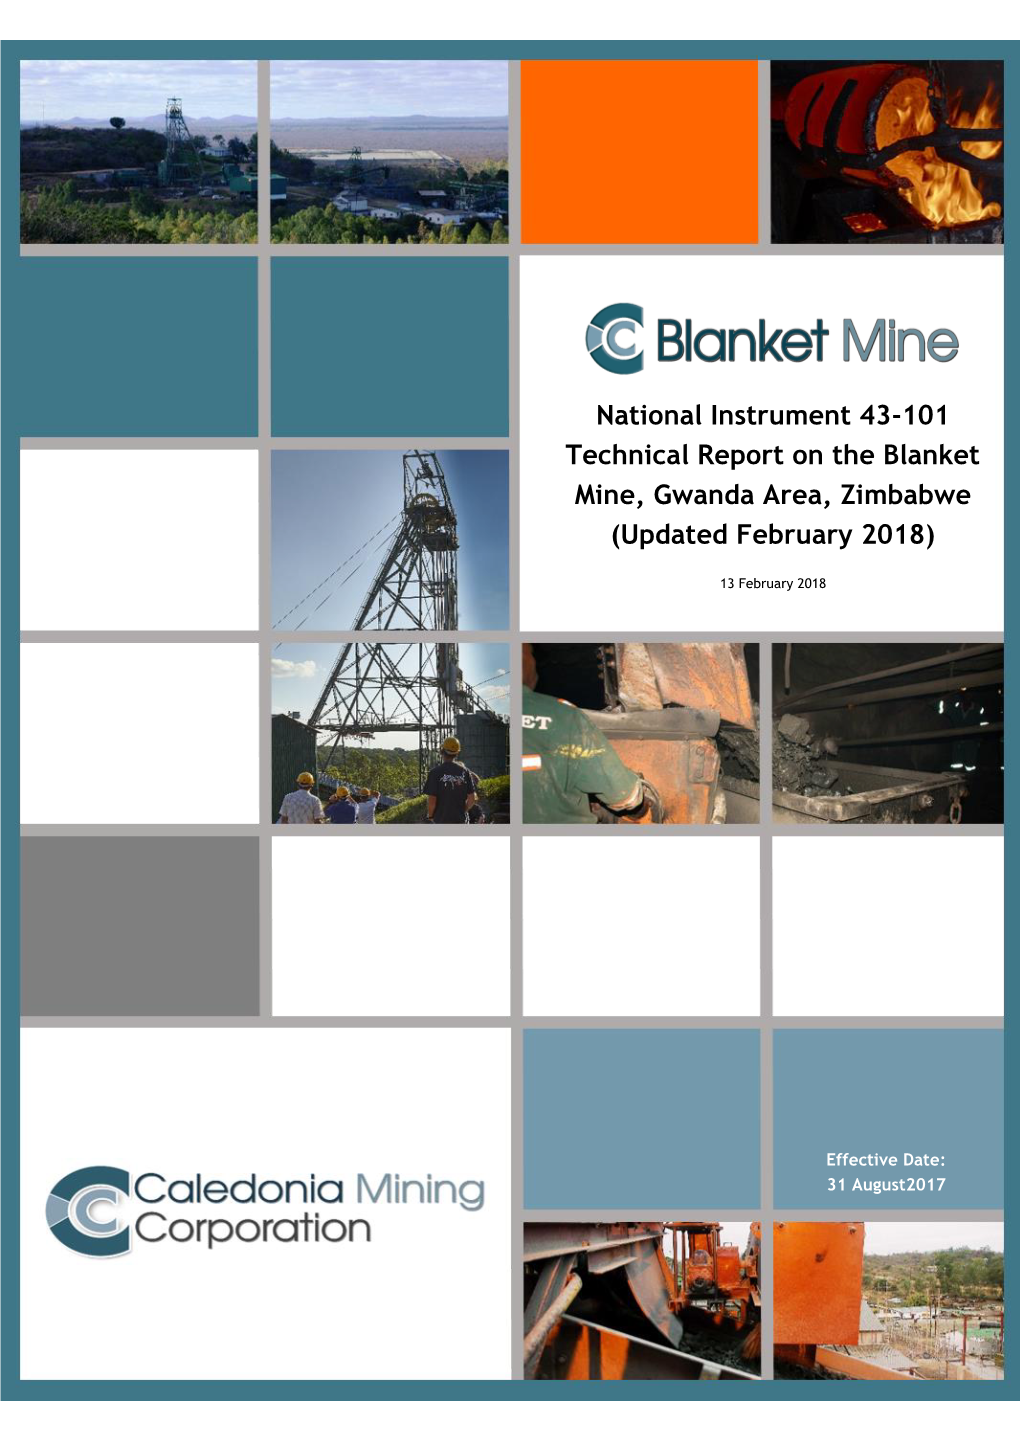 Bokoni Mine NI43-101 Technical Report